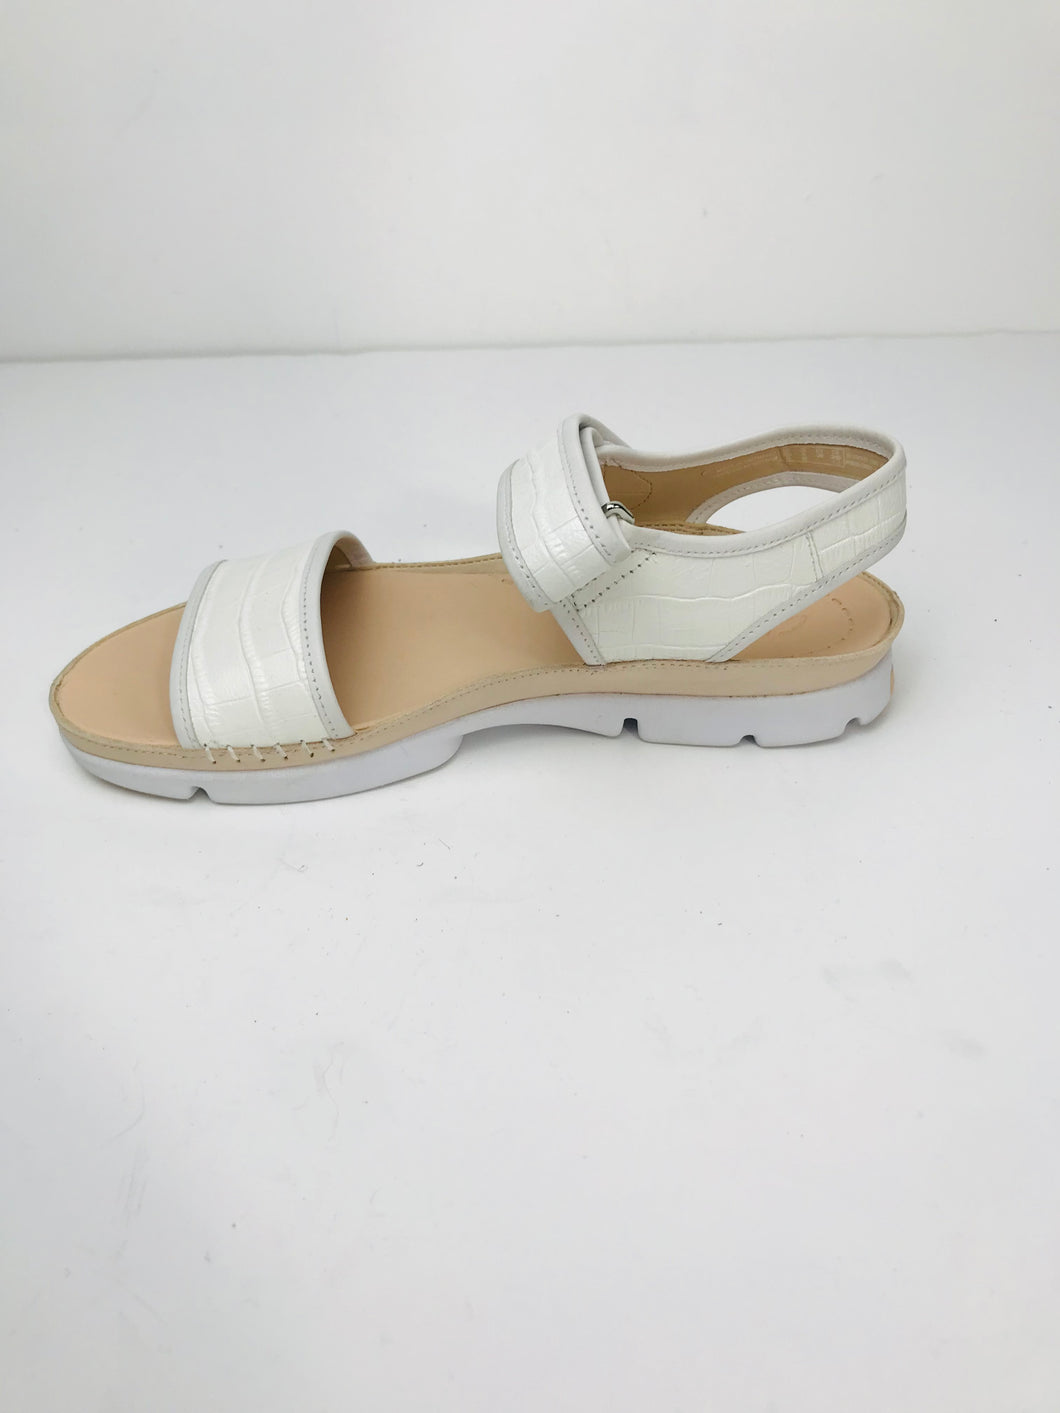 Clarks Women's Alligator Embossed Sandals | UK5.5 | White